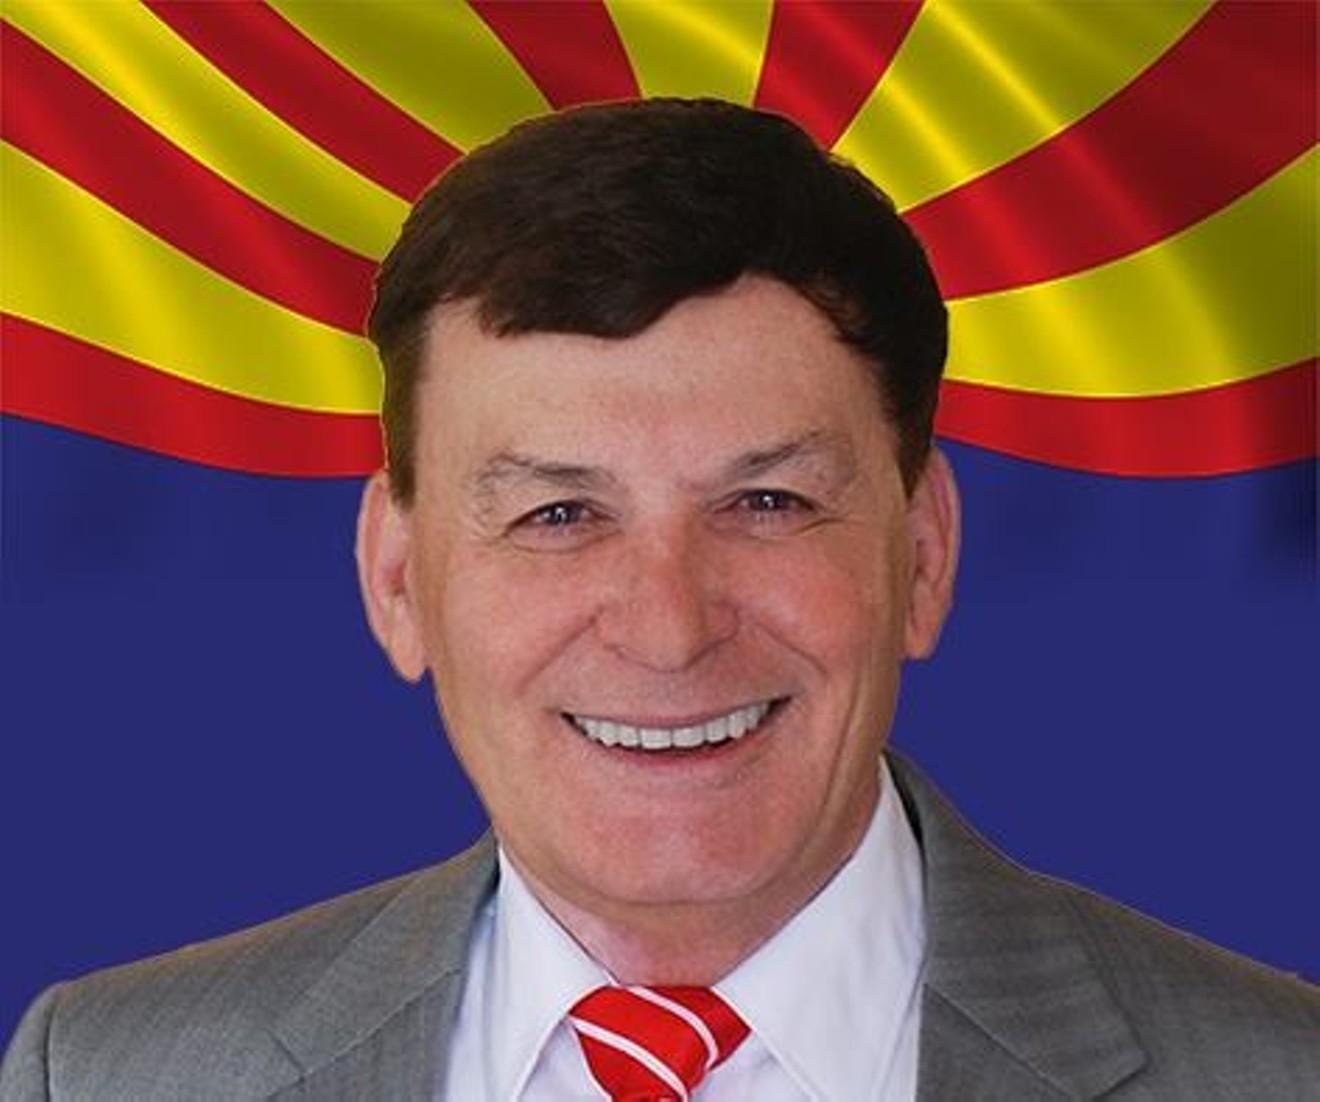 Arizona Representative David Stringer